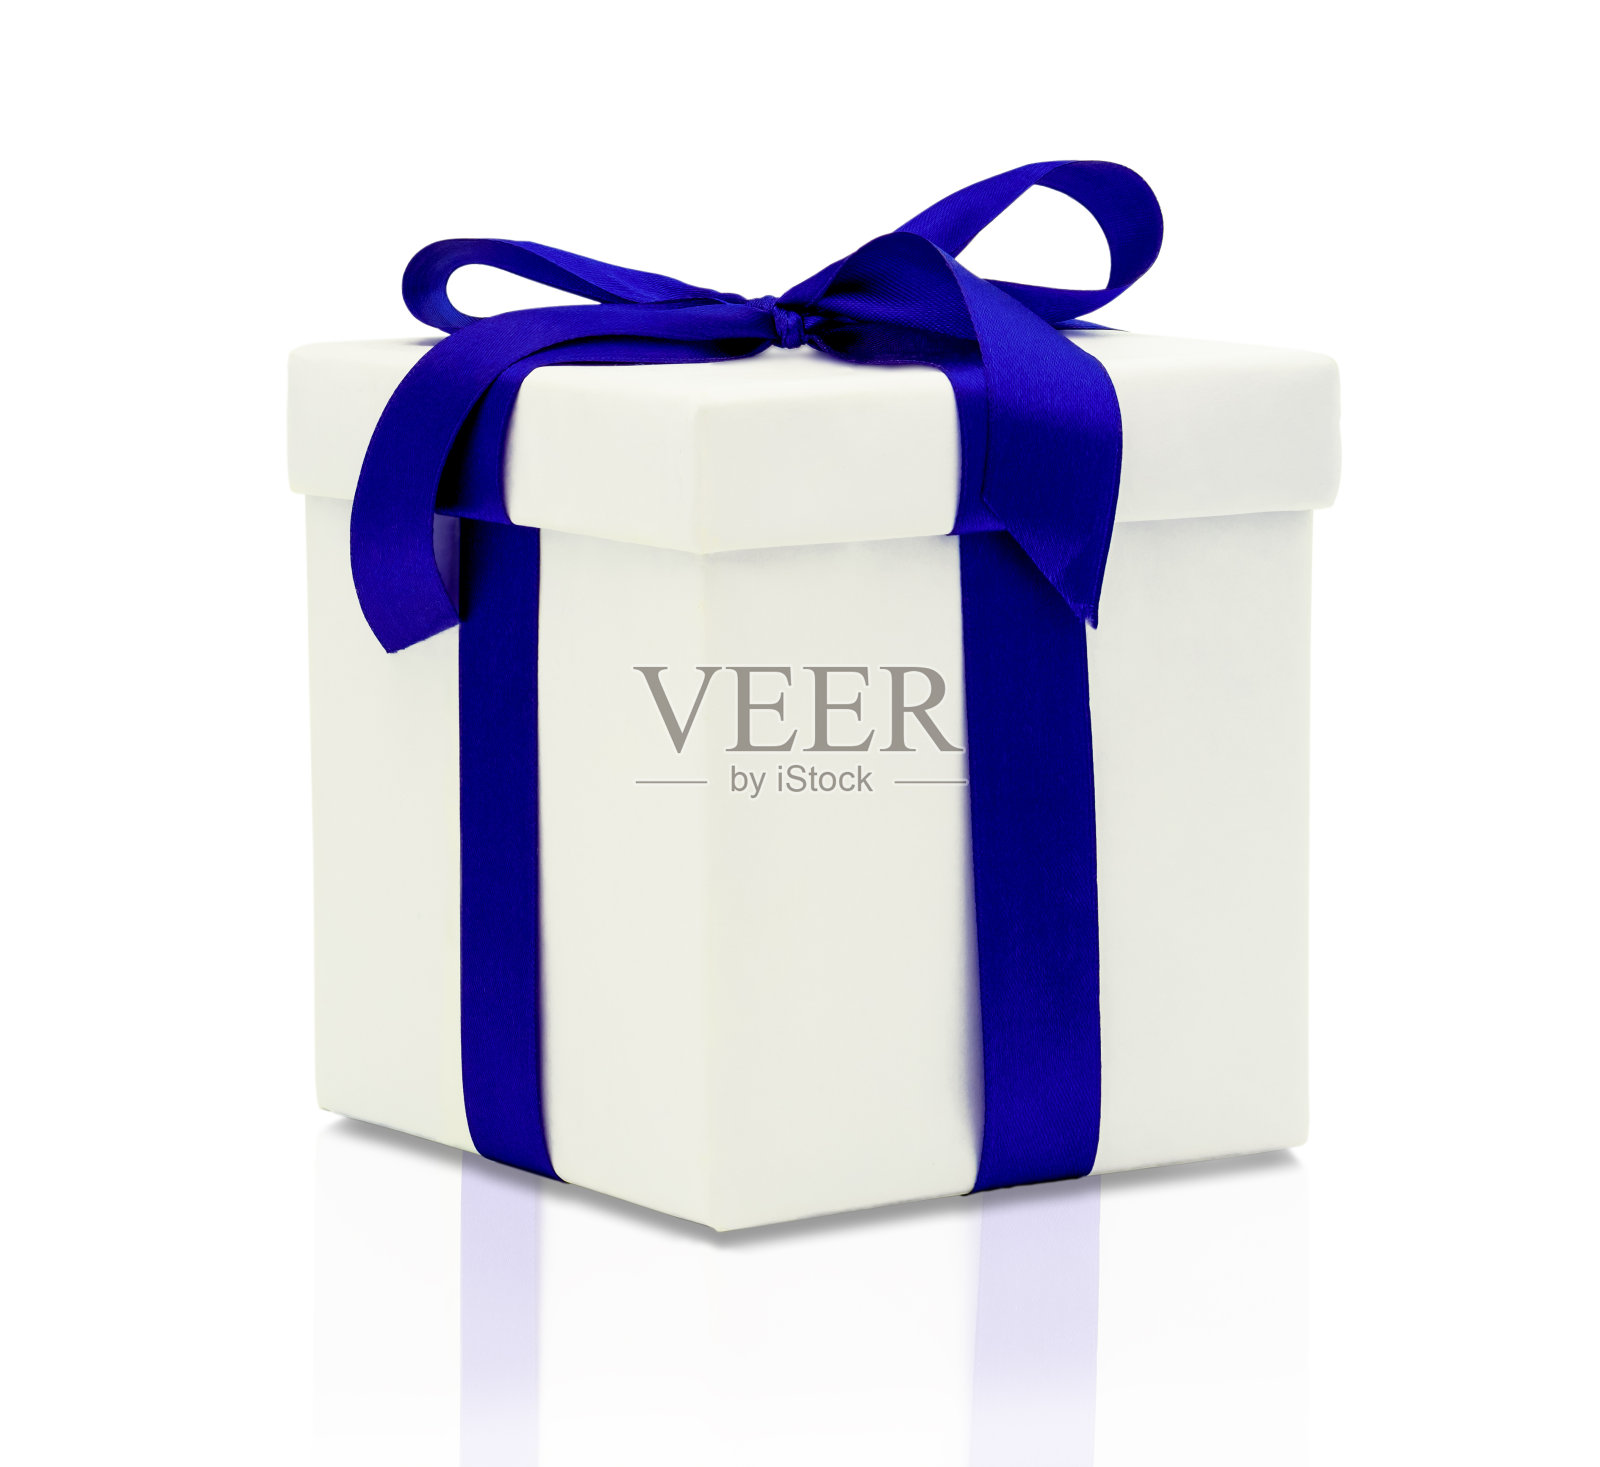 封闭的礼盒孤立在白色背景与裁剪路径，白色礼盒系上豪华的深蓝色缎子或丝绸缎带产品为一个快乐的庆祝活动，如生日，新年和复活节照片摄影图片